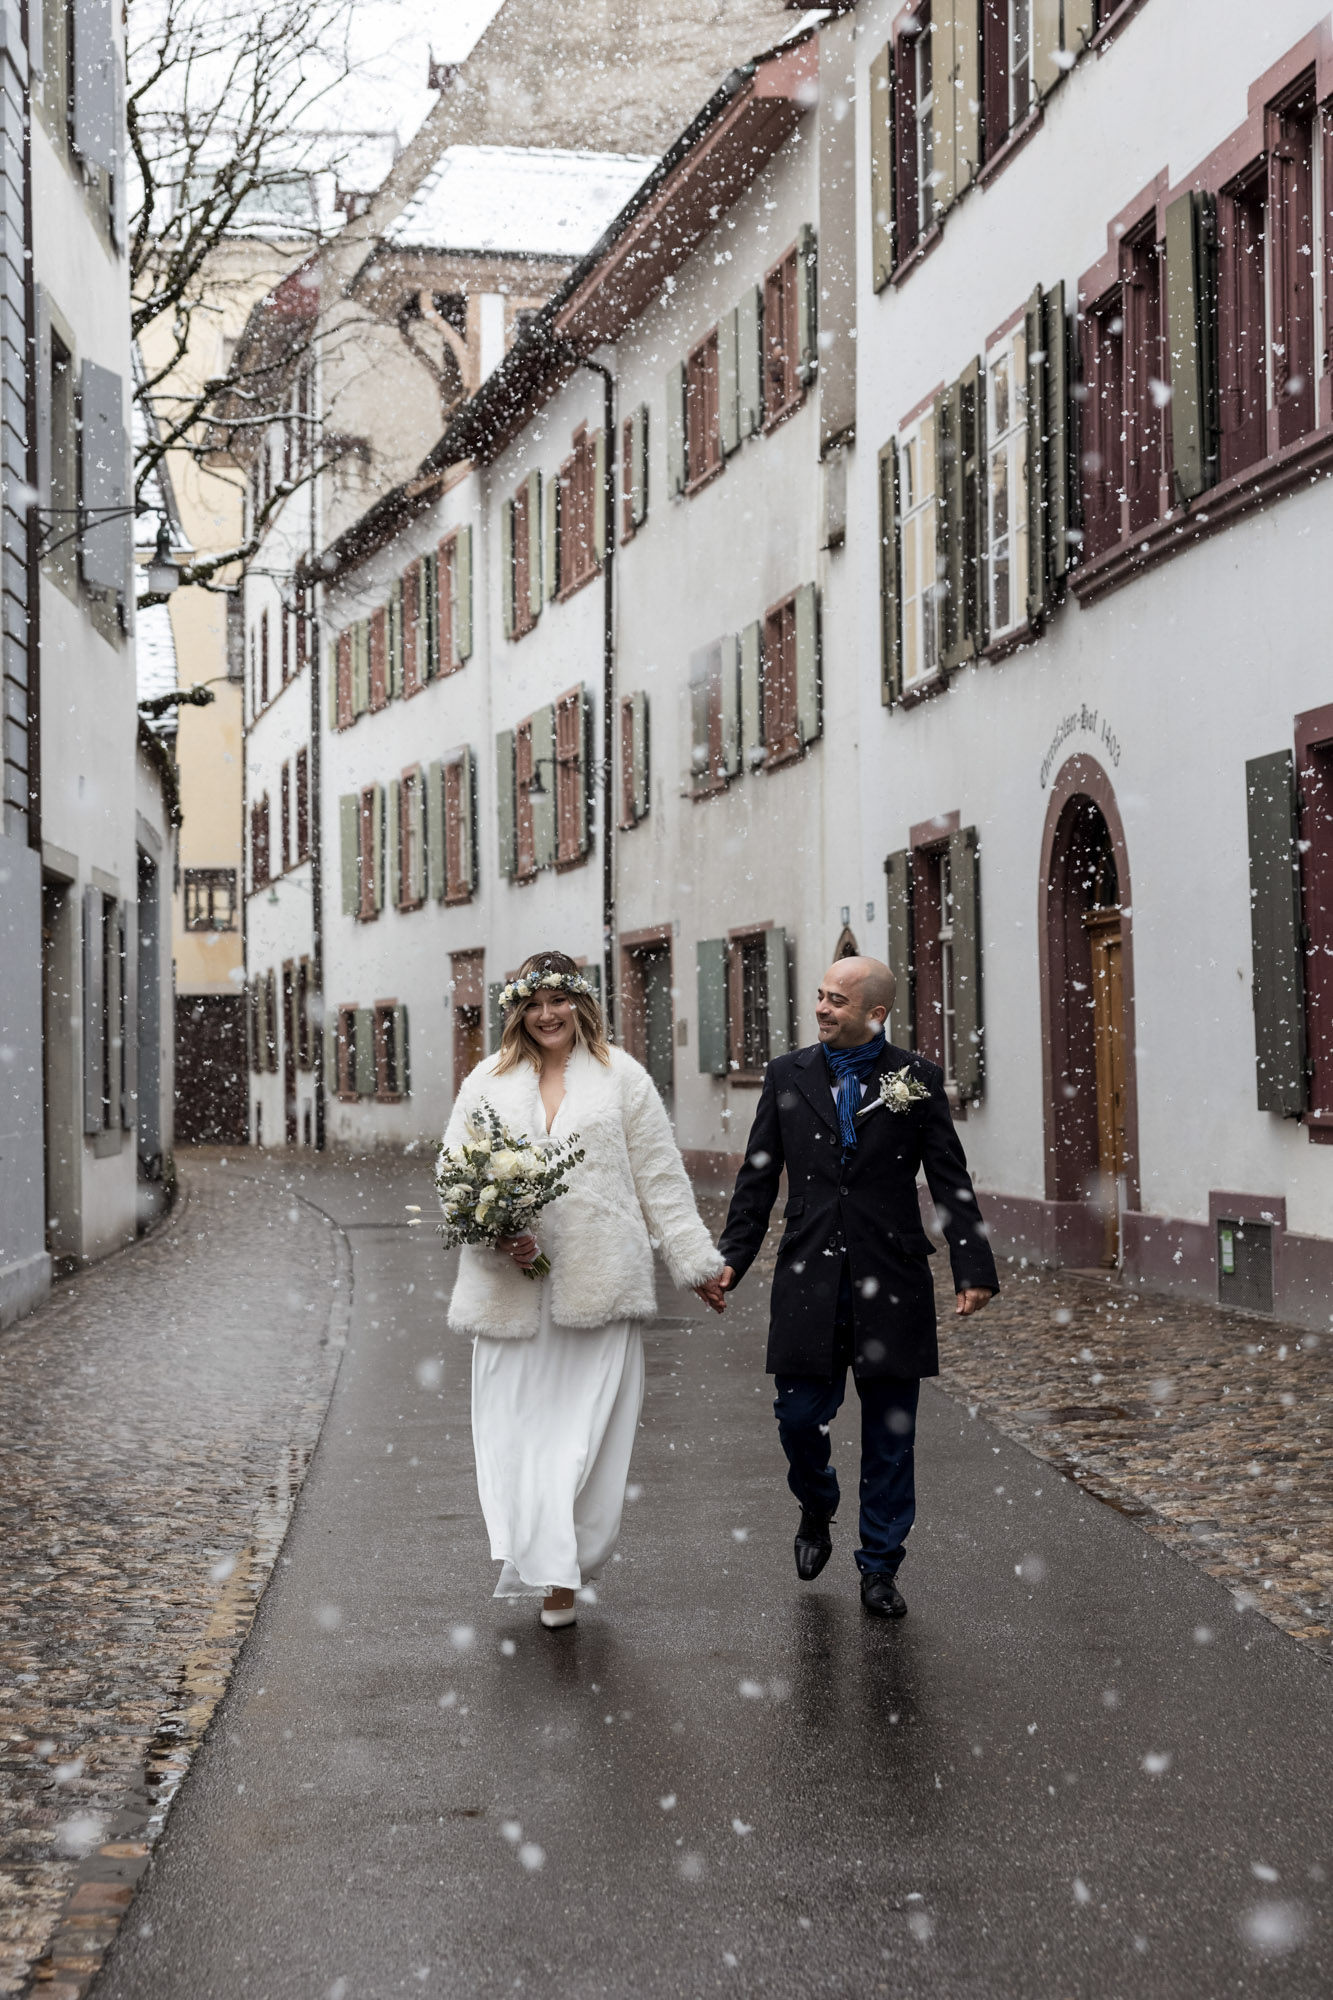 Paarfotoshooting inmitten von Schneeflocken - Hochzeitsfotograf Basel